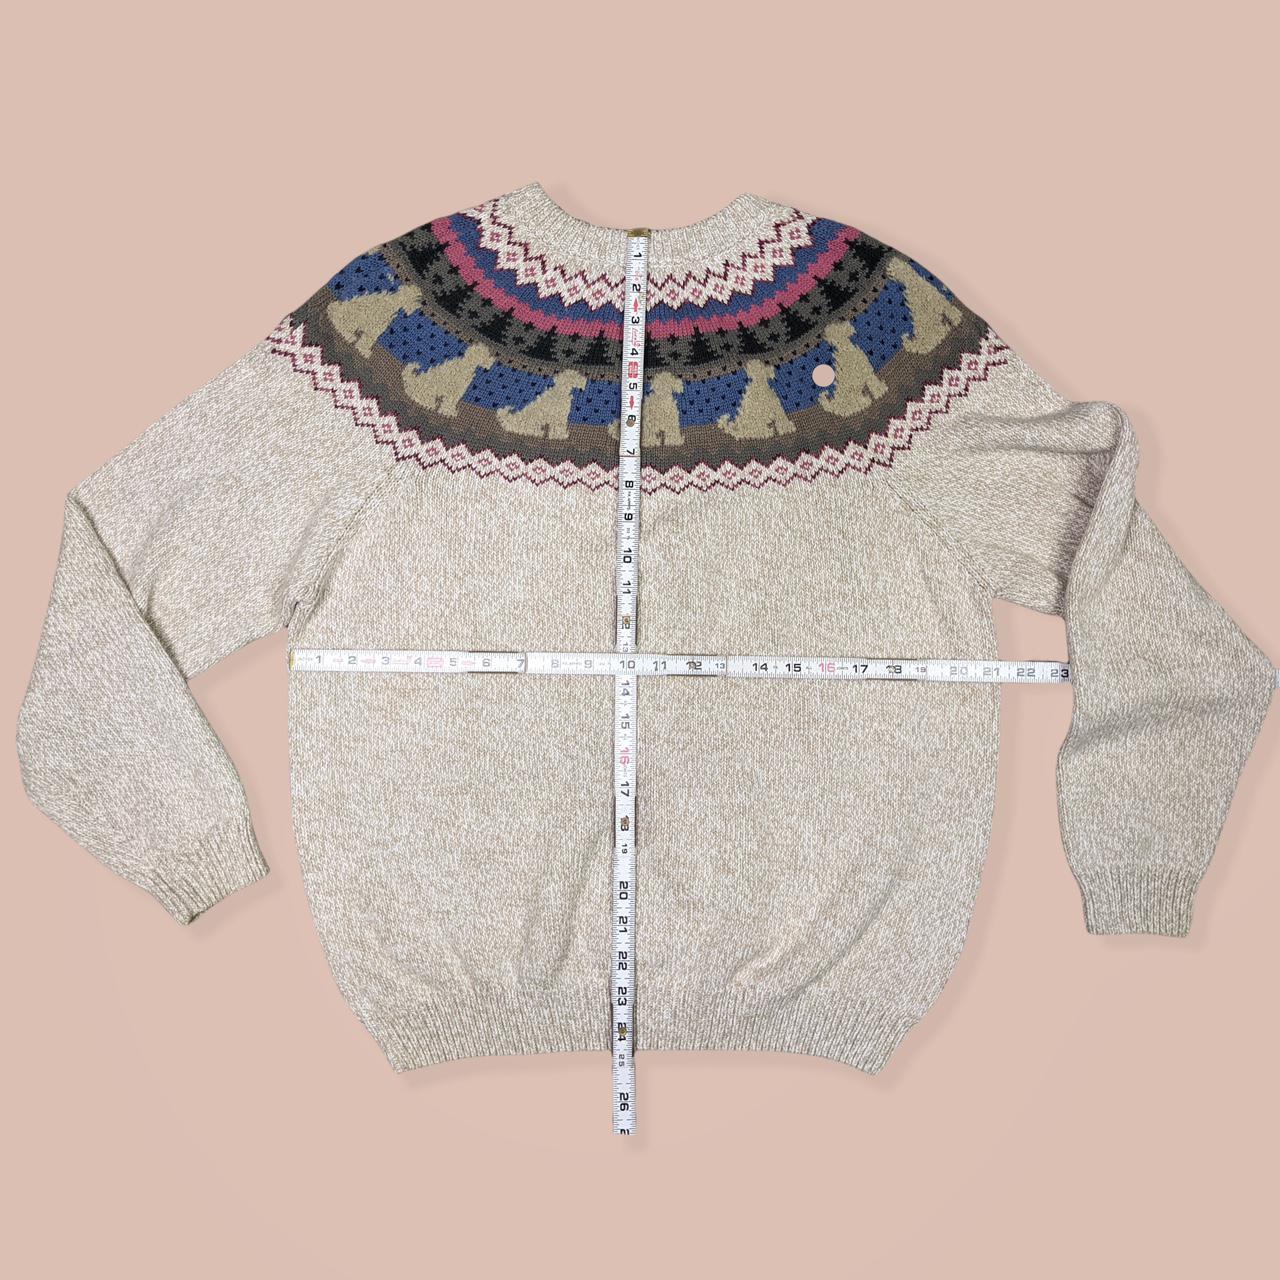 Product Image 3 - Vintage grandma sweater fair isle